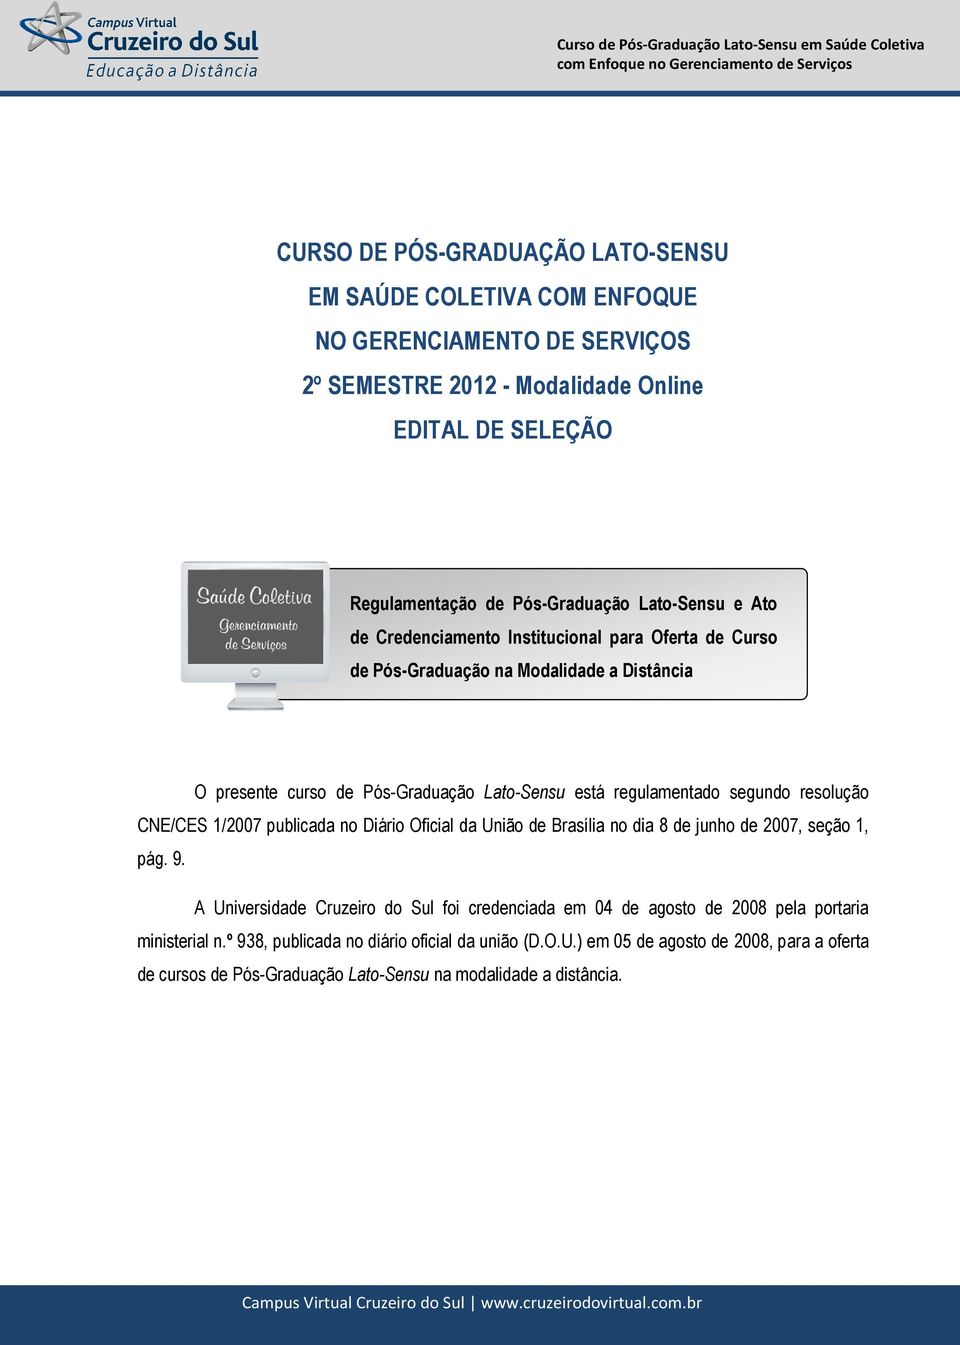 resolução CNE/CES 1/2007 publicada no Diário Oficial da União de Brasília no dia 8 de junho de 2007, seção 1, pág. 9.